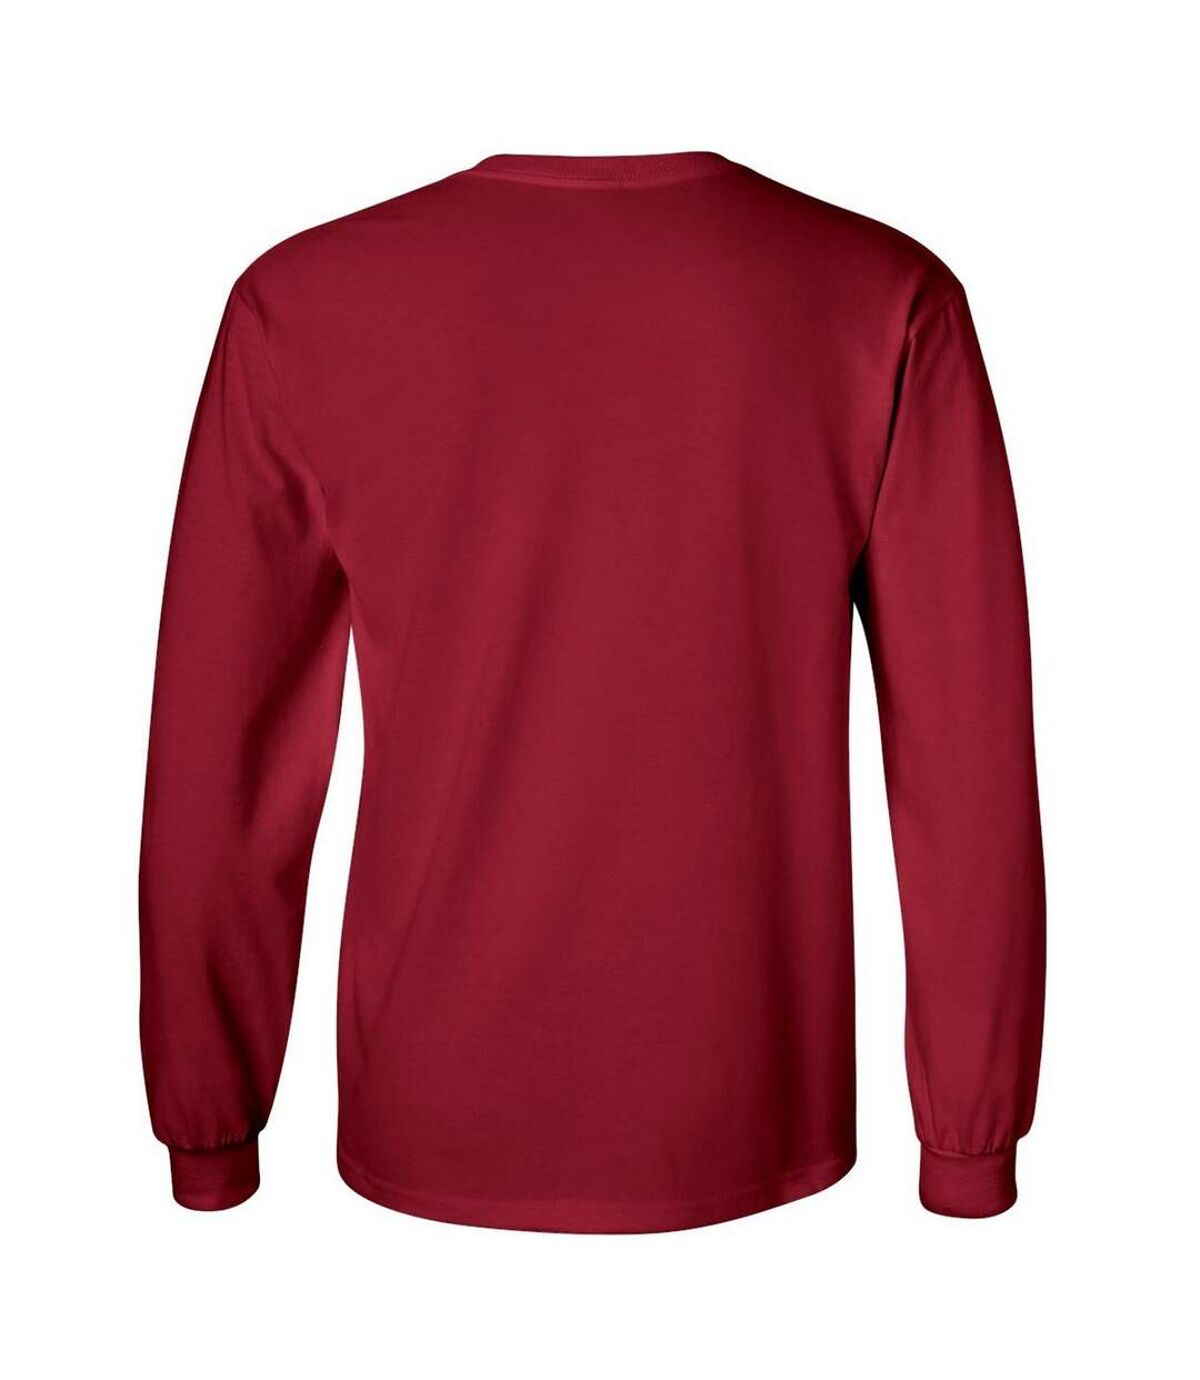 T-shirt uni à manches longues Gildan pour homme (Rouge cardinal) - UTBC477